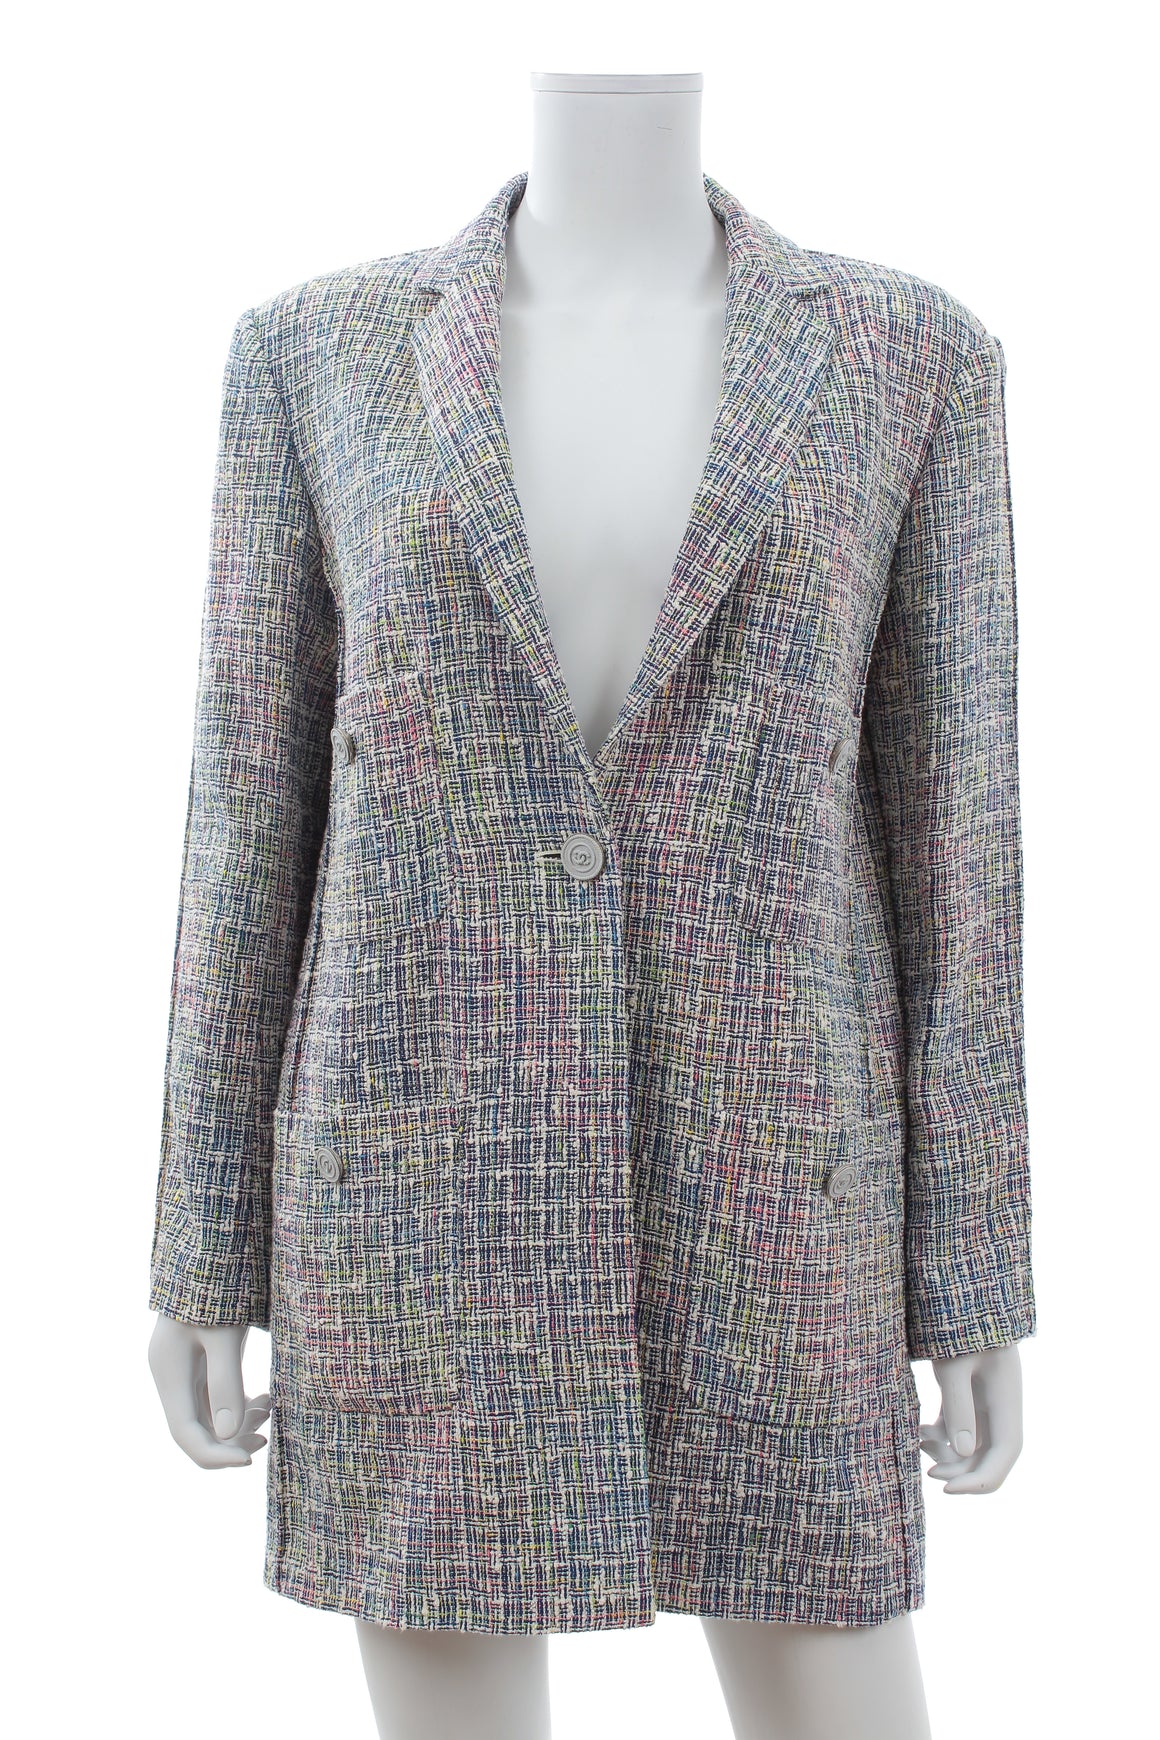 Chanel Multicoloured Tweed Cotton-Blend Blazer